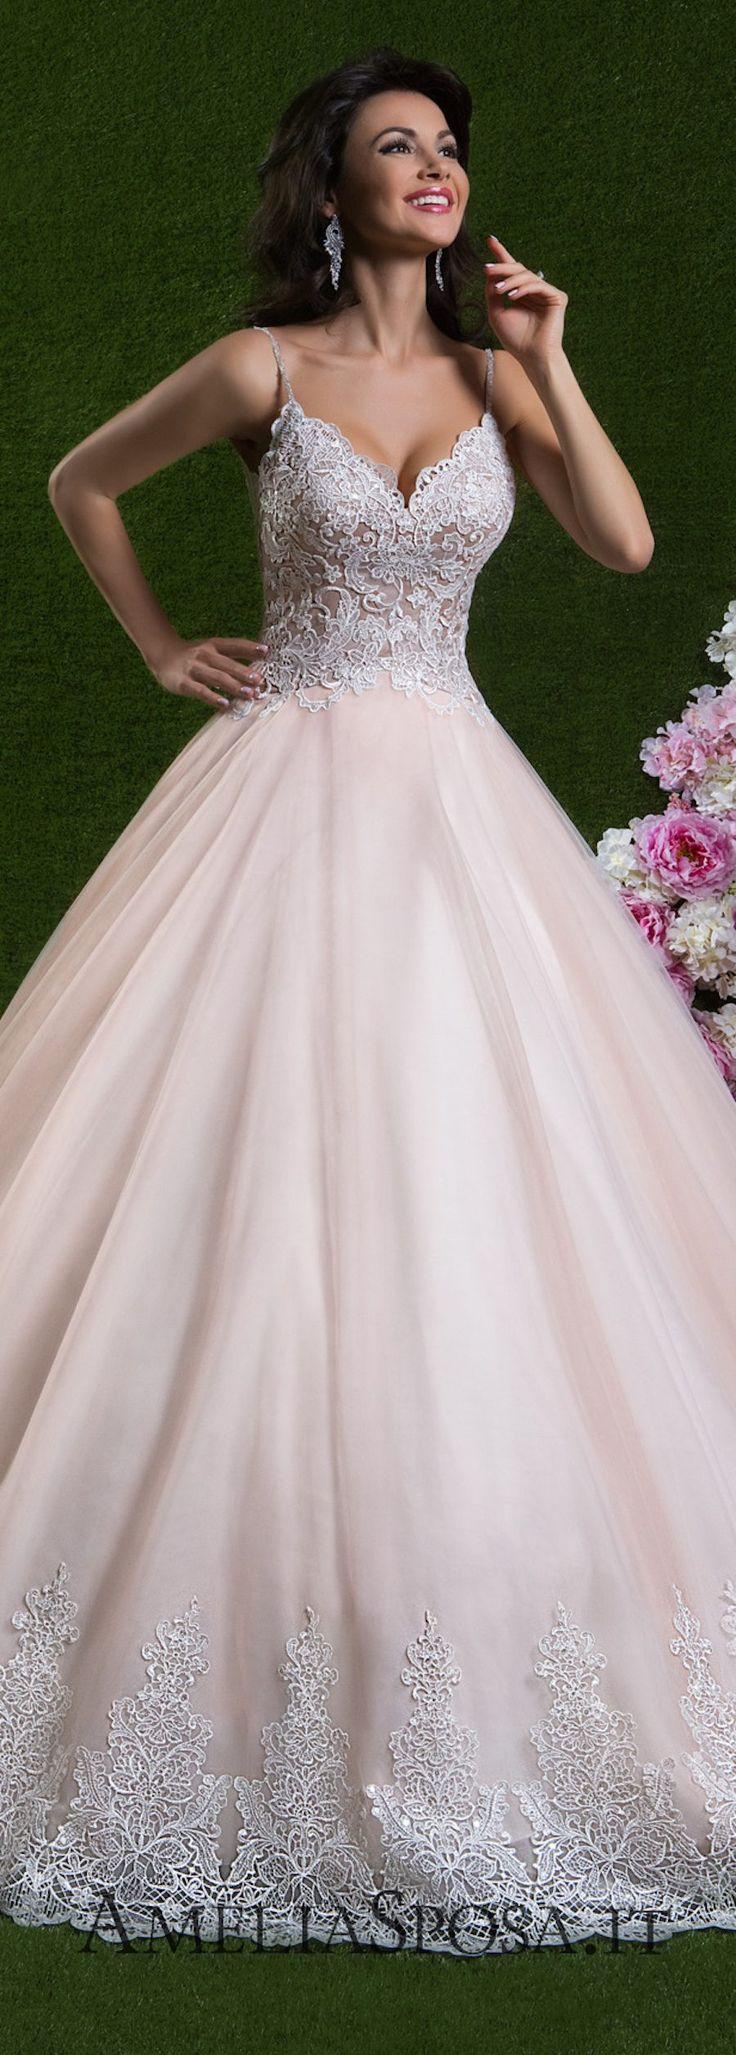 زفاف - Amelia Sposa Wedding Dresses 2018 - Brilliant Moments Collection